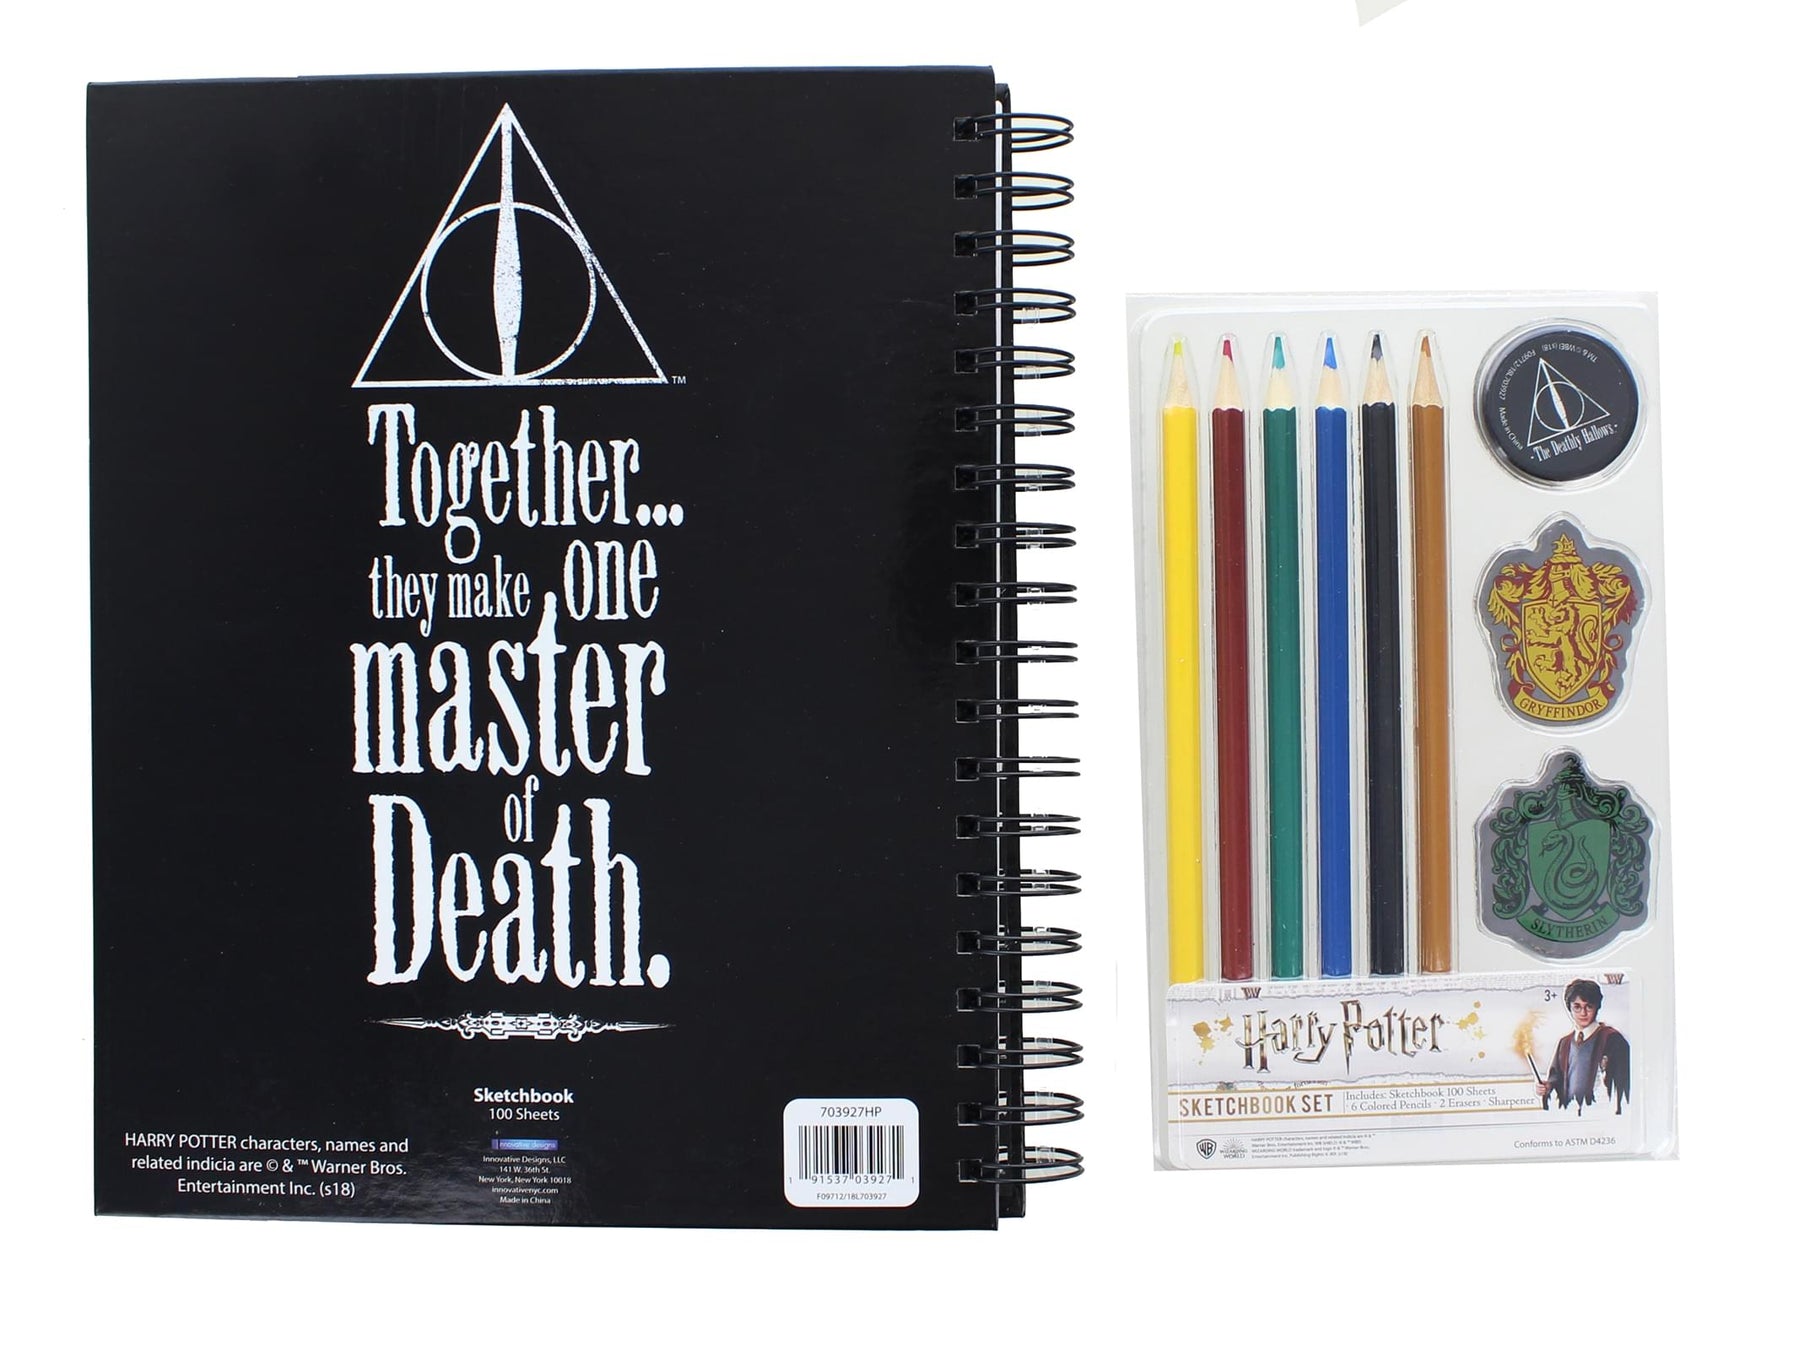 Harry Potter Deathly Hollows Sketchbook Set